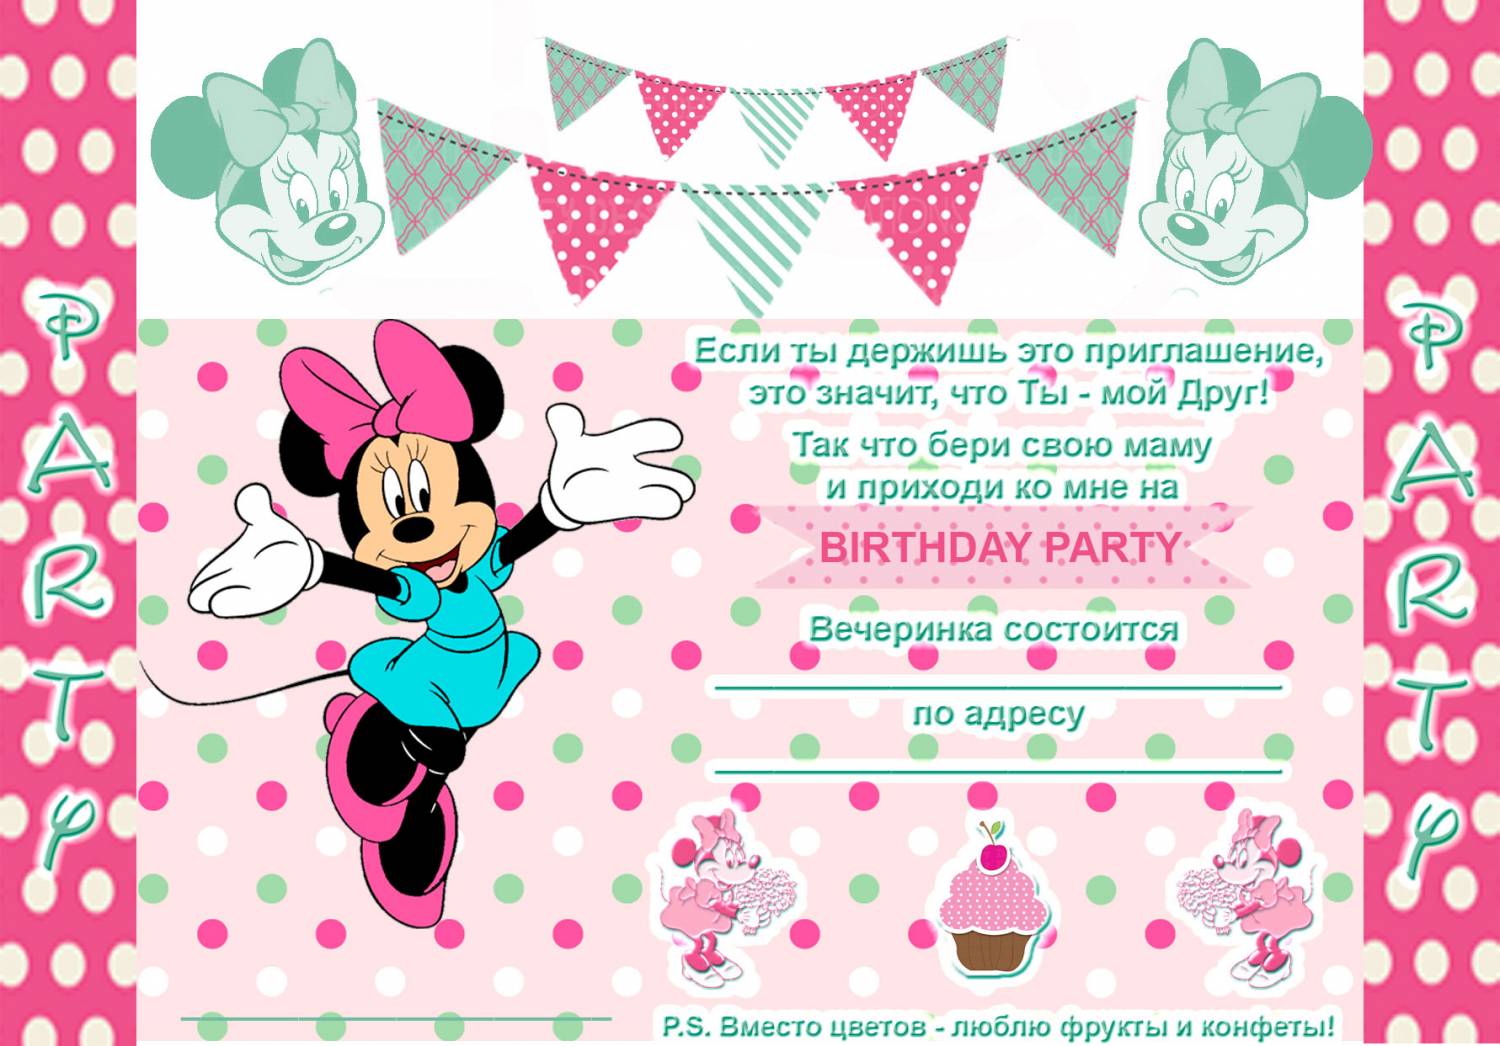 Сделать электронное приглашение на день рождения. Пригласительные на день рождения девочки. Приглашение на день рождения мини Маус. Приглашения на др девочки. Пригласительная открытка на день рождения.